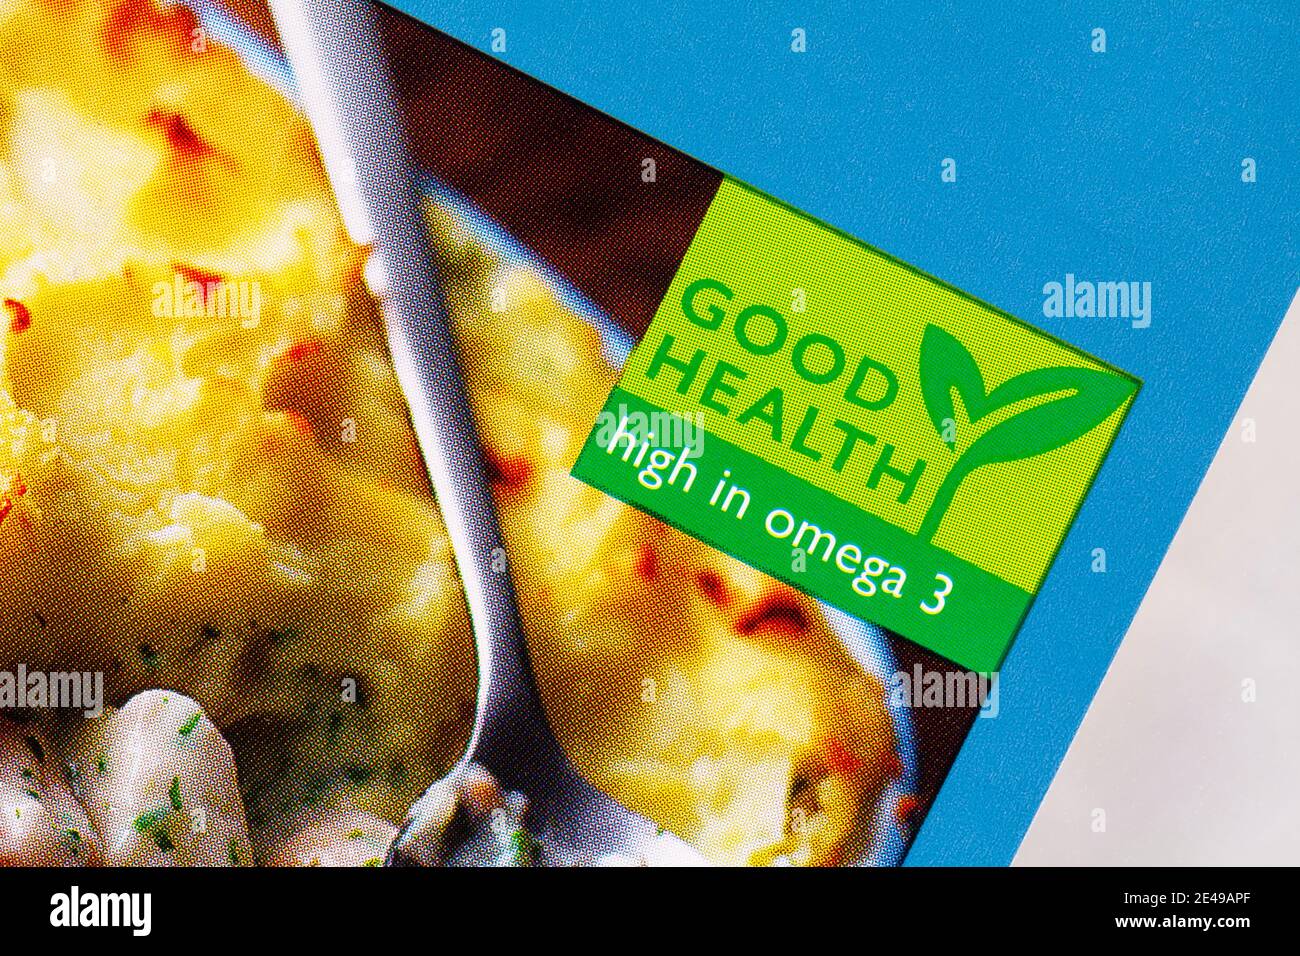 Buena salud alto en omega 3 símbolo logotipo en el paquete De peces Waitrose Foto de stock